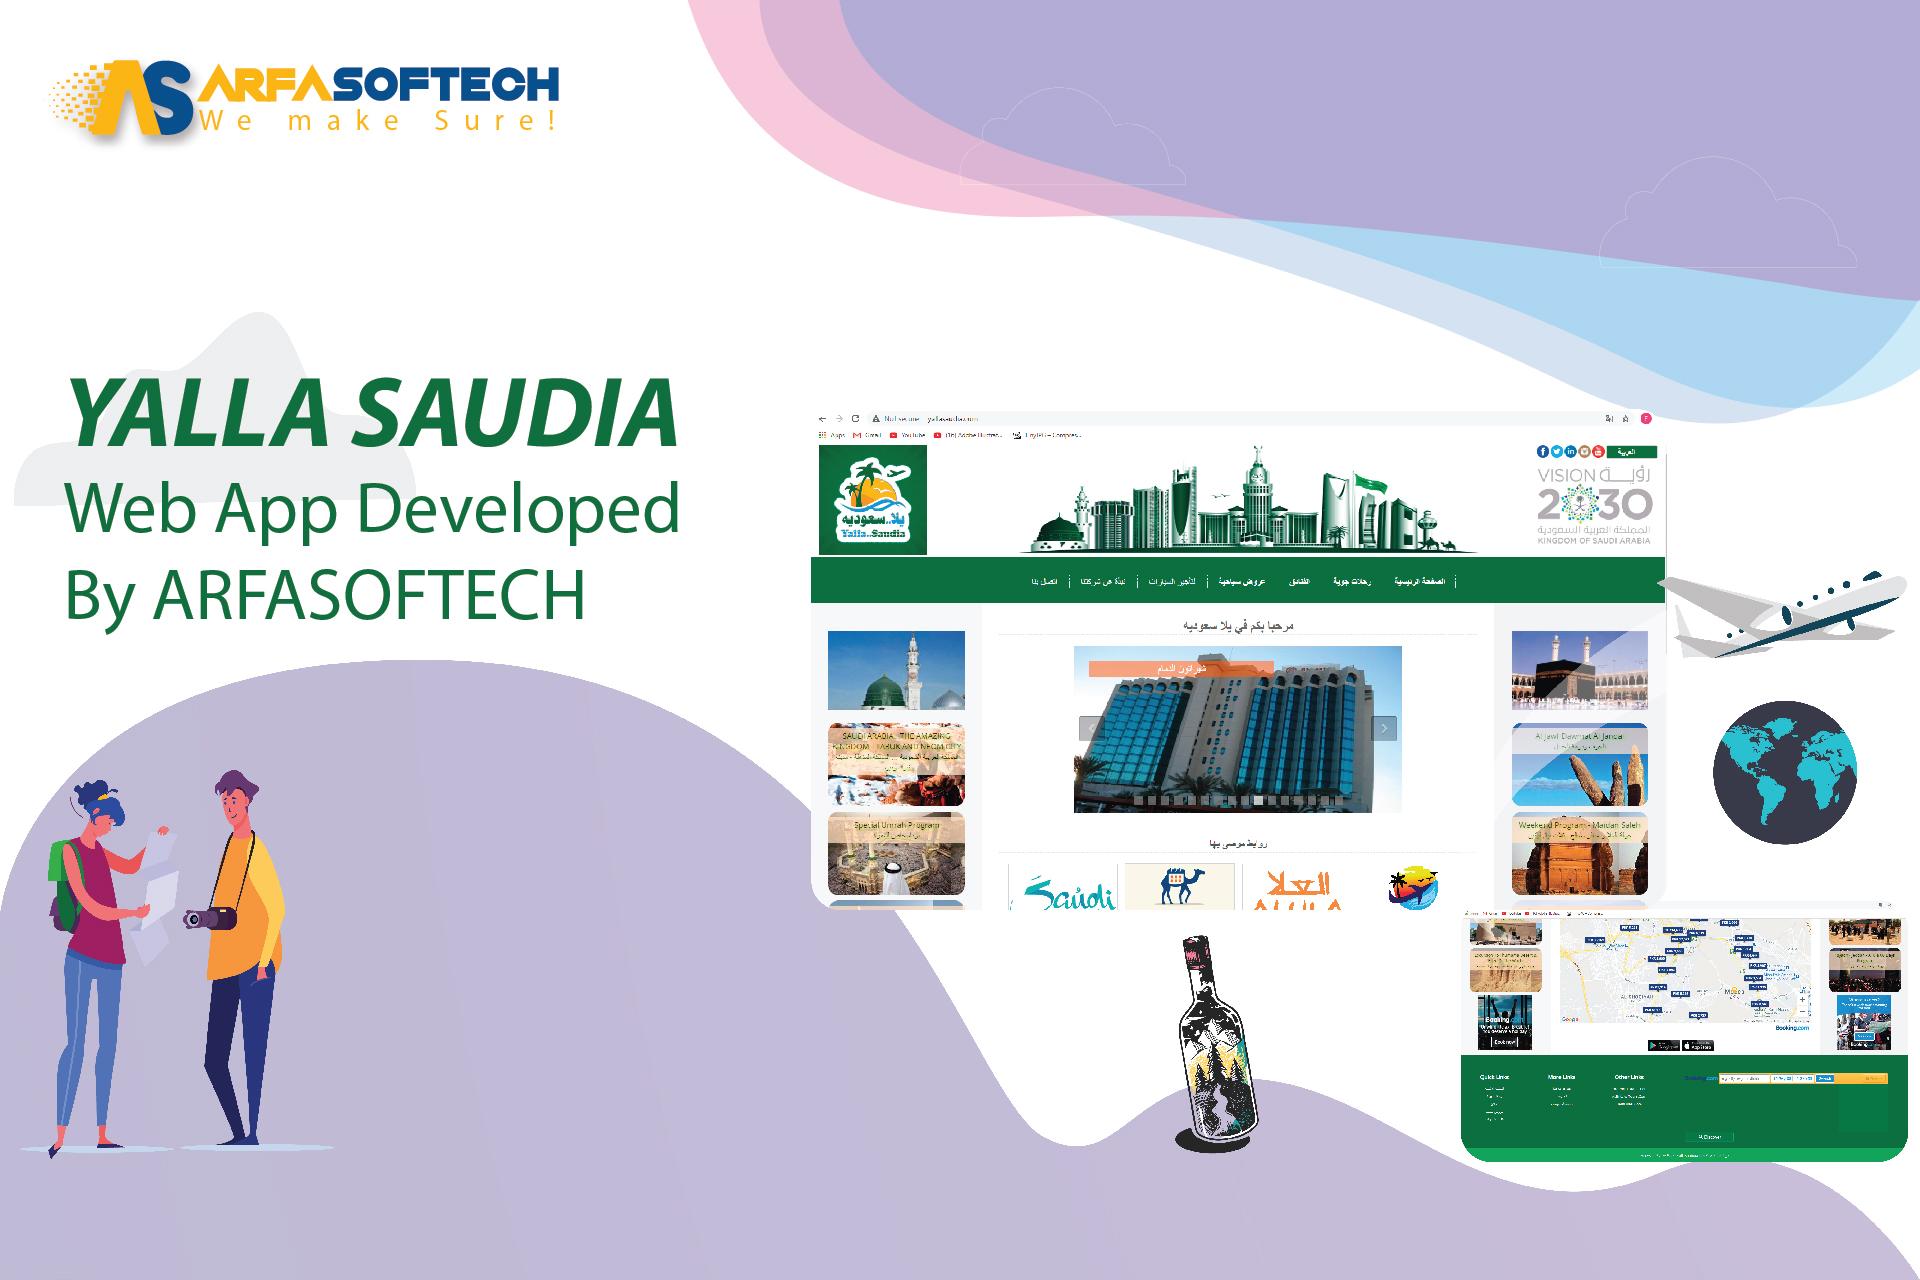 yalla saudia developed by arfasoftech